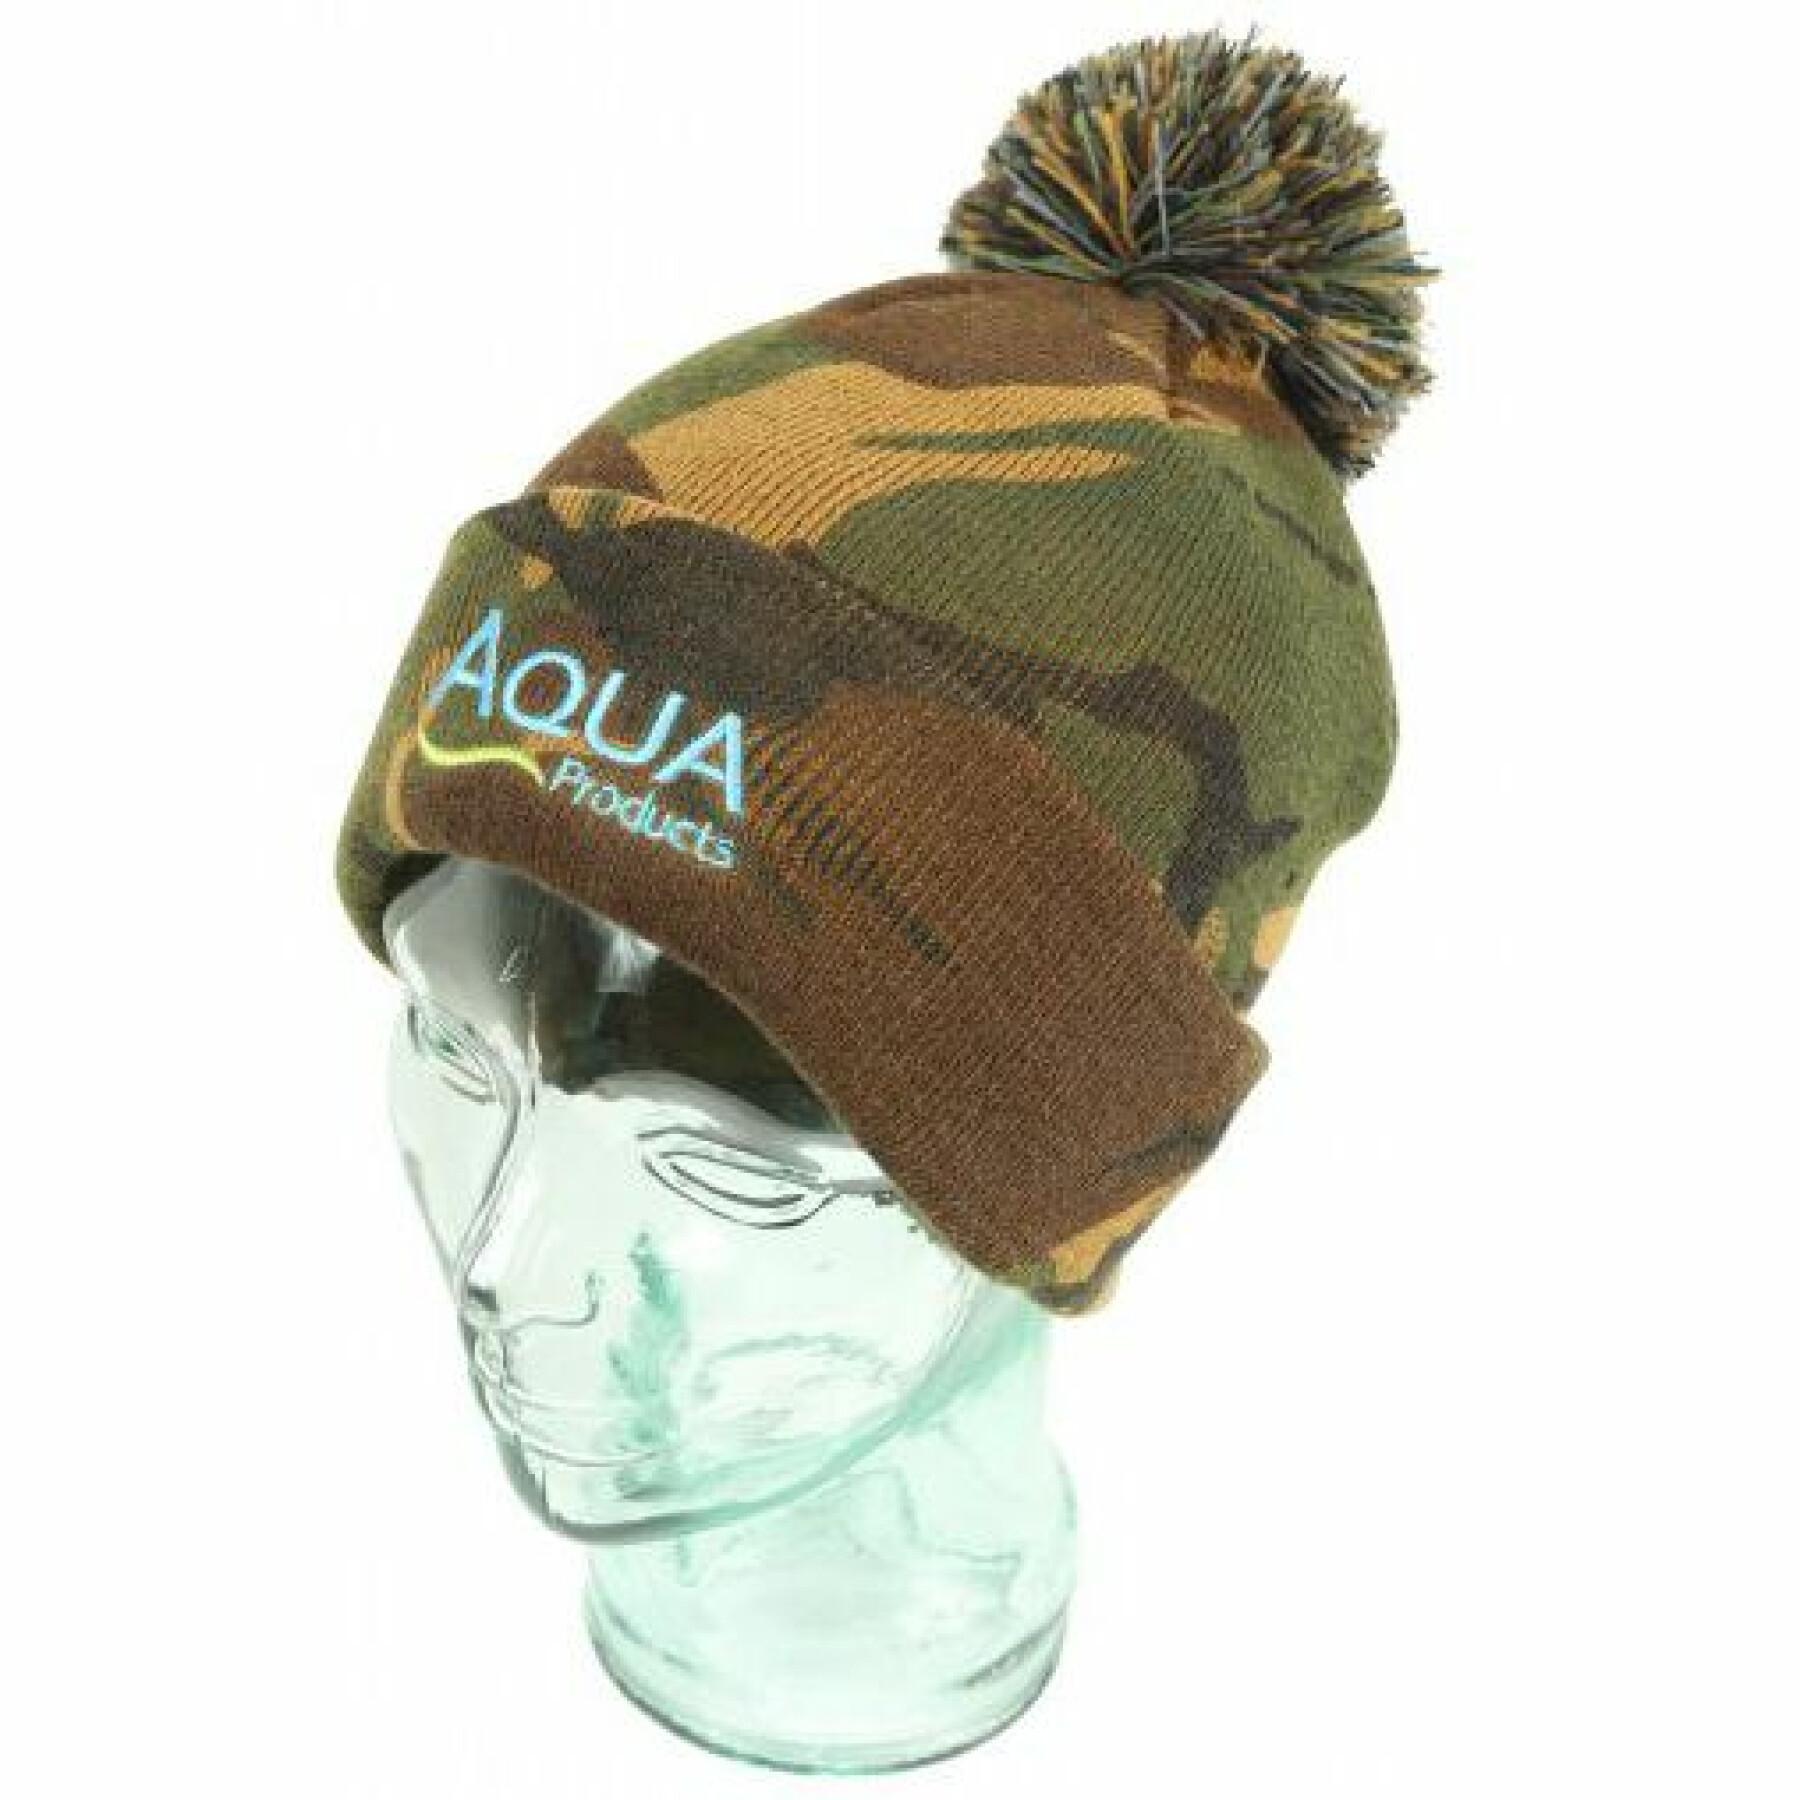 Bonnet Aqua Products bobble hat